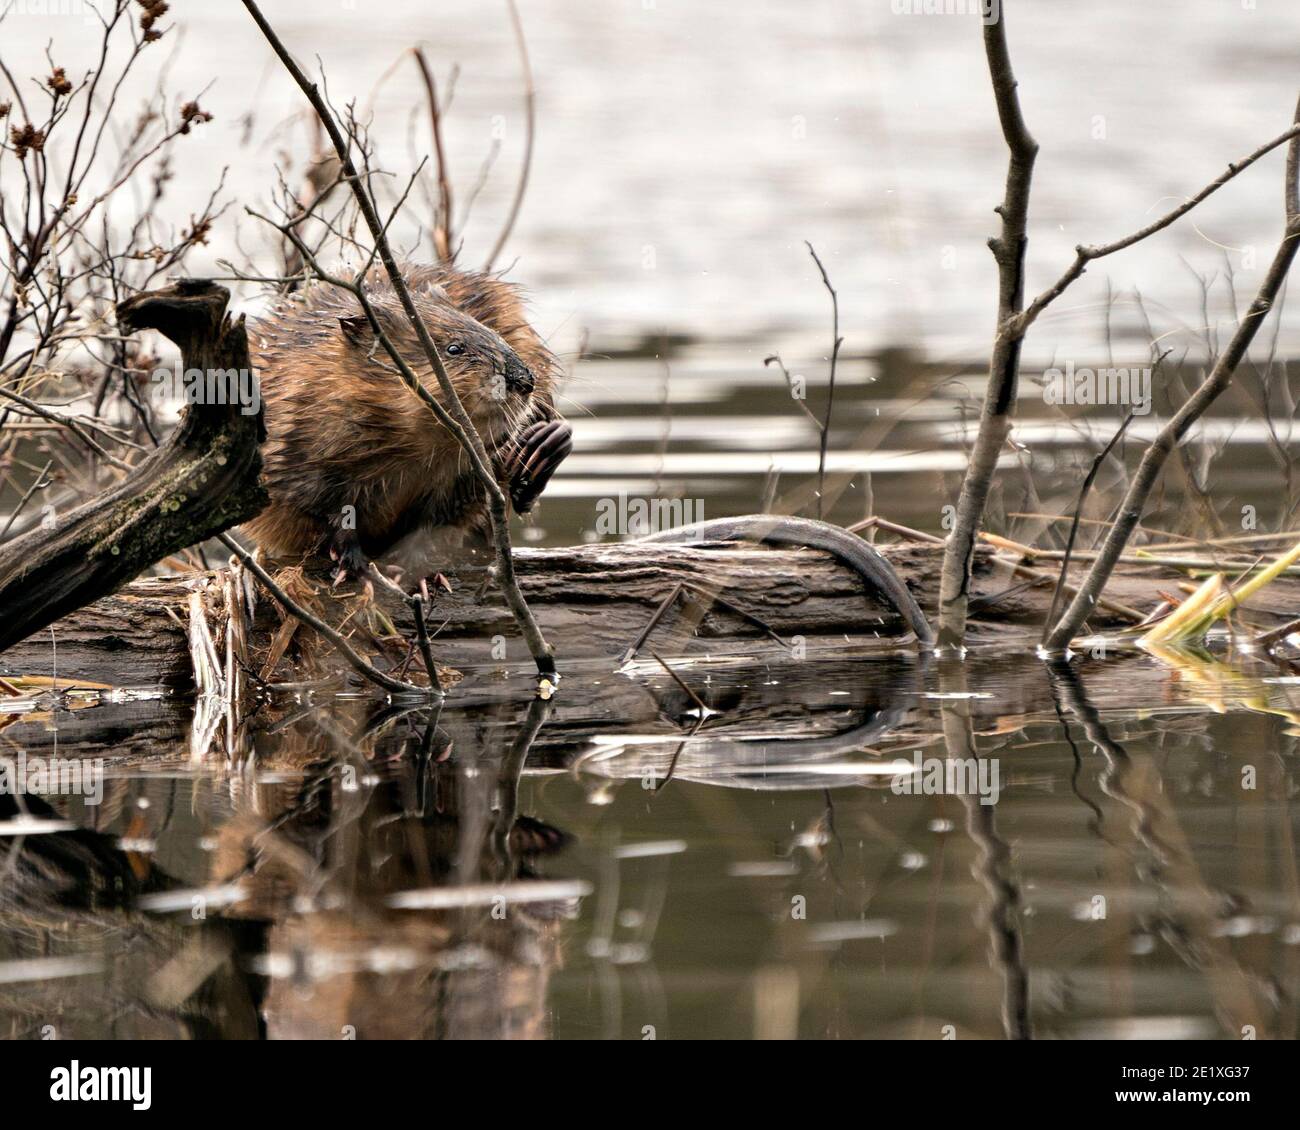 Fotos de stock de muskrat. Muskrat sentado en un tronco que muestra su piel marrón, cola con un fondo de agua borrosa en su entorno y hábitat. Imagen. Imagen Foto de stock